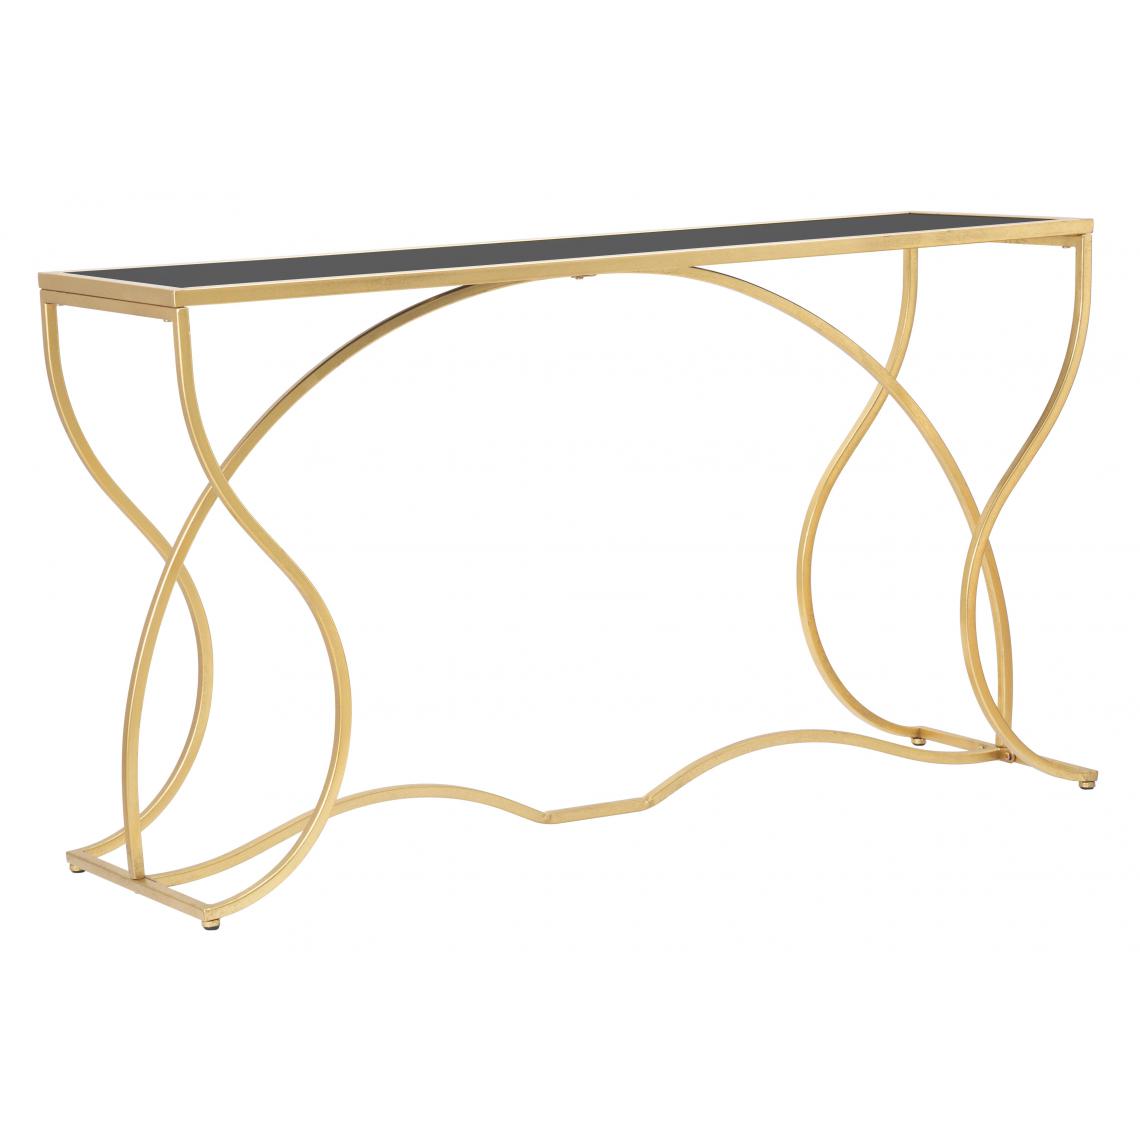 Alter - Console élégante, structure en métal doré, avec étagère en verre trempé, couleur or, Dimensions 40 x 75 x 130 cm - Tables à manger